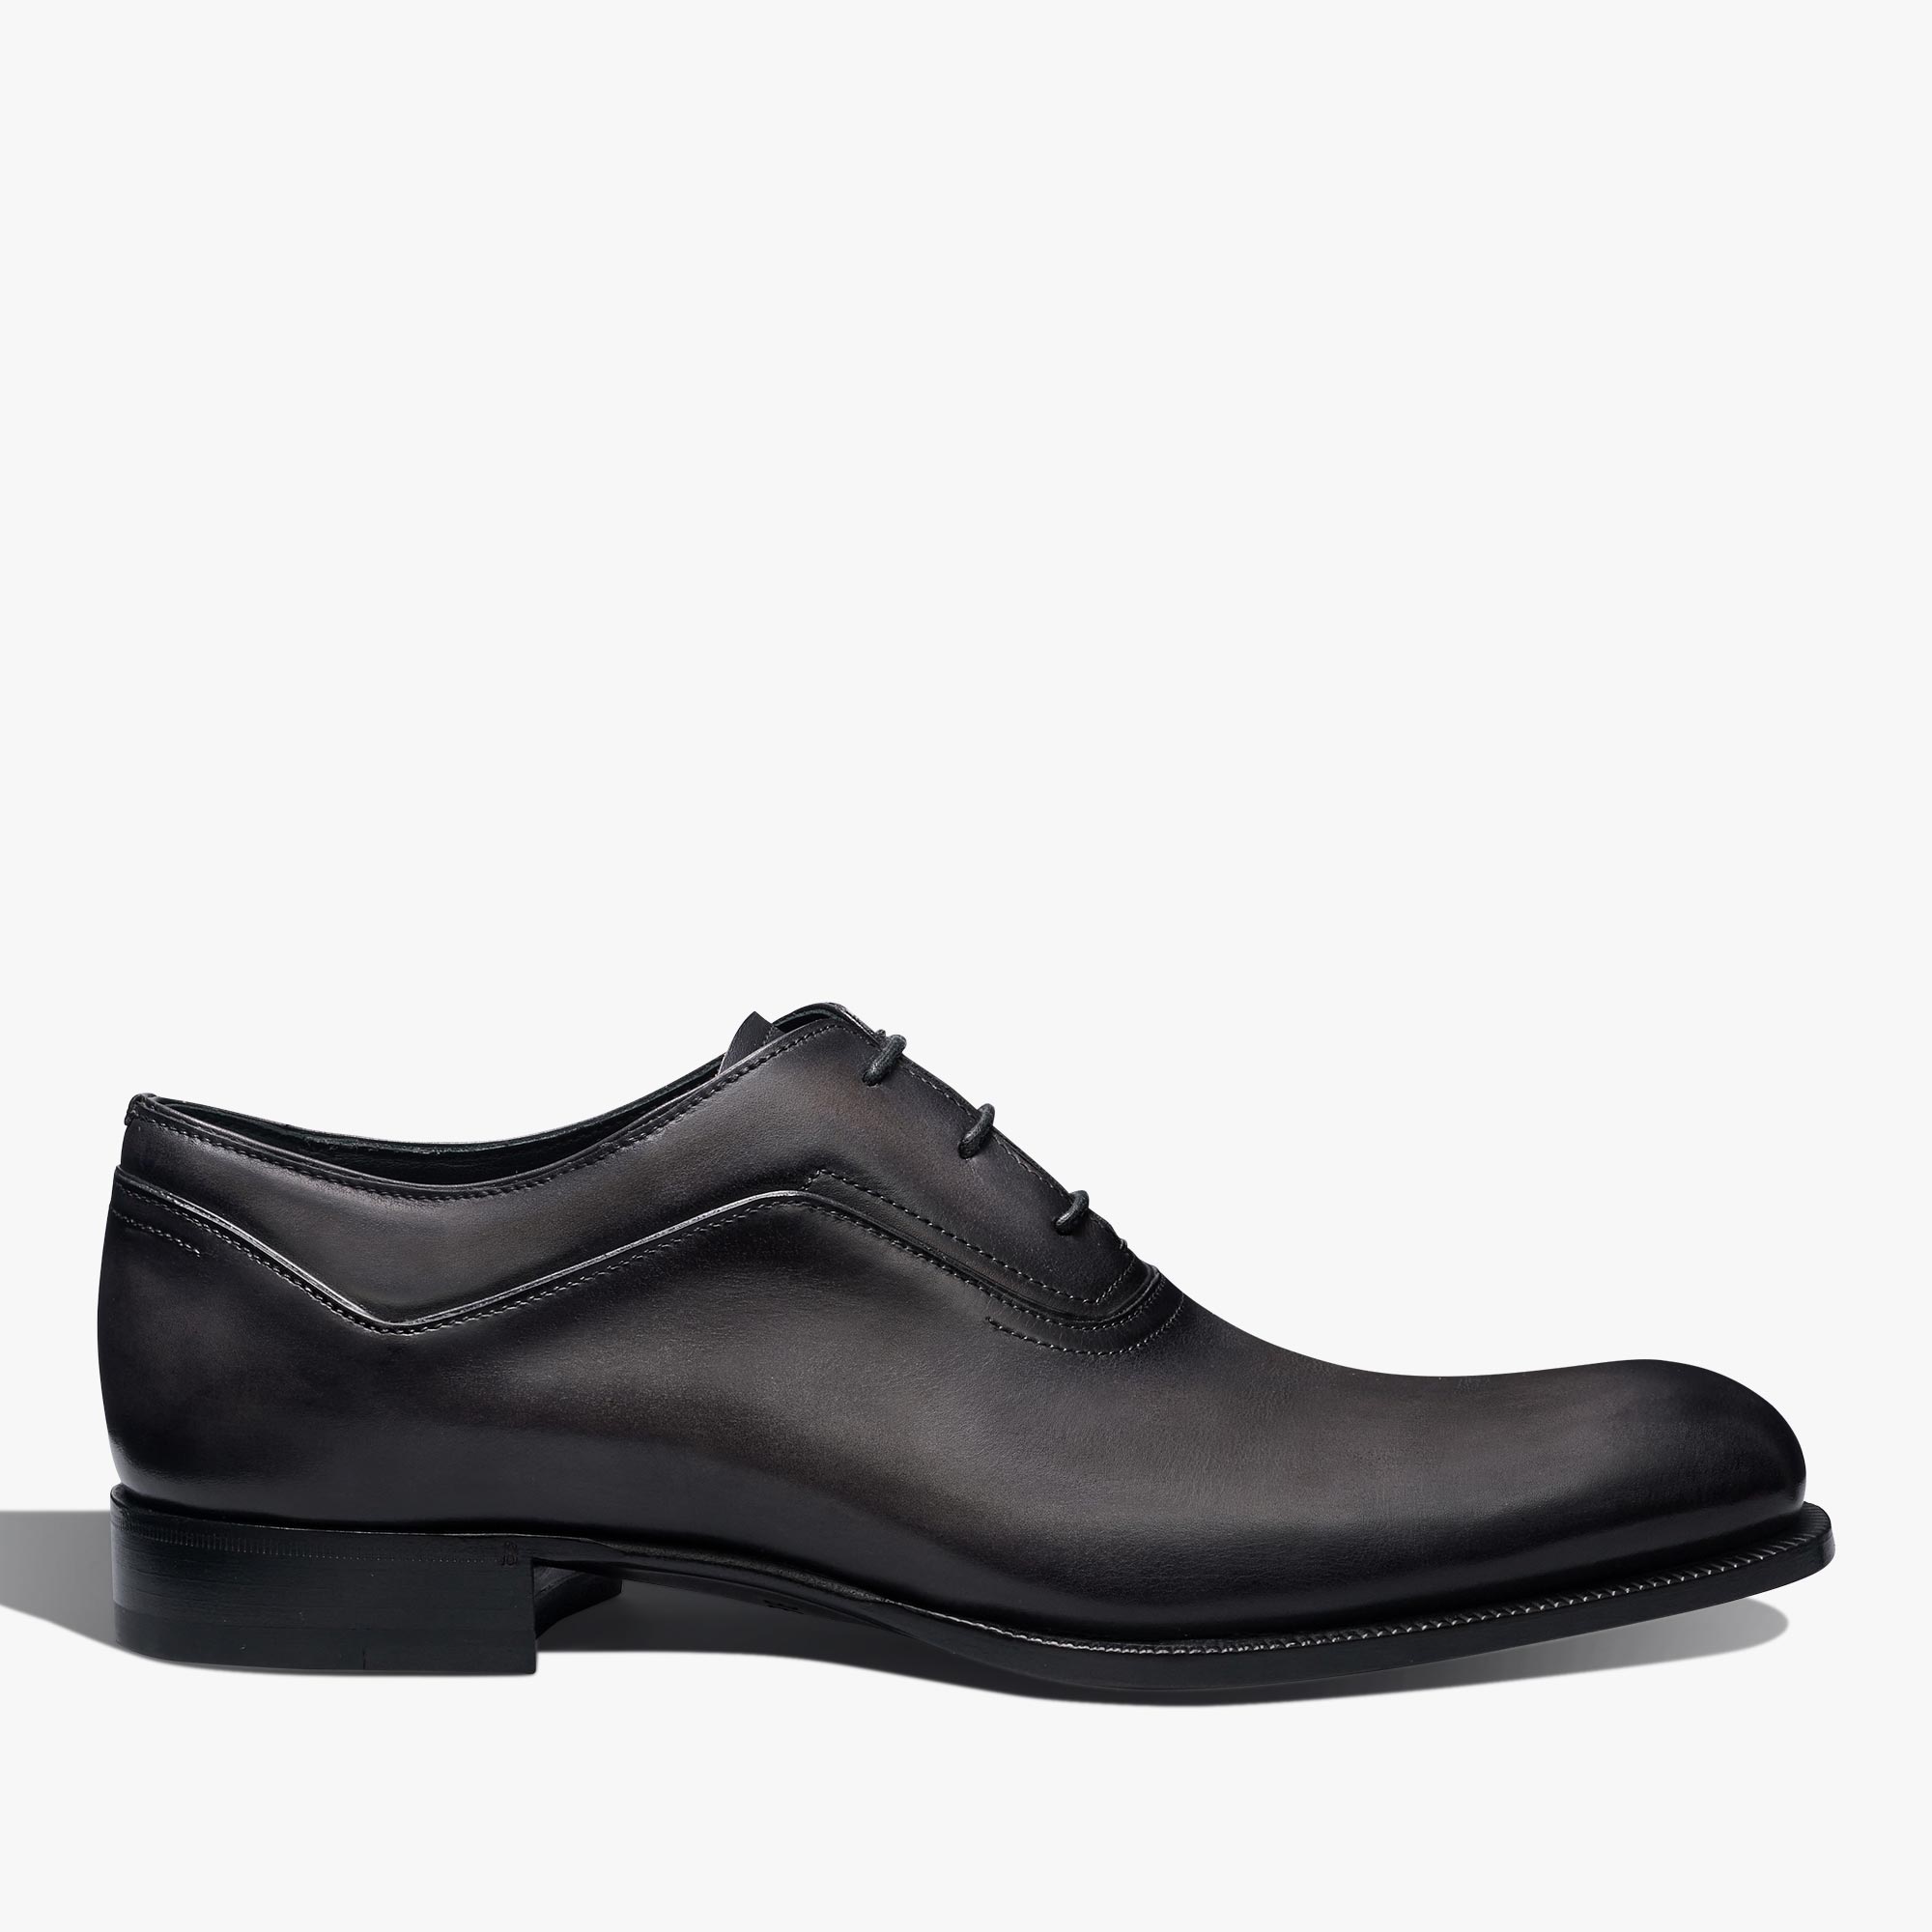 Profil皮革牛津鞋, NERO GRIGIO, hi-res